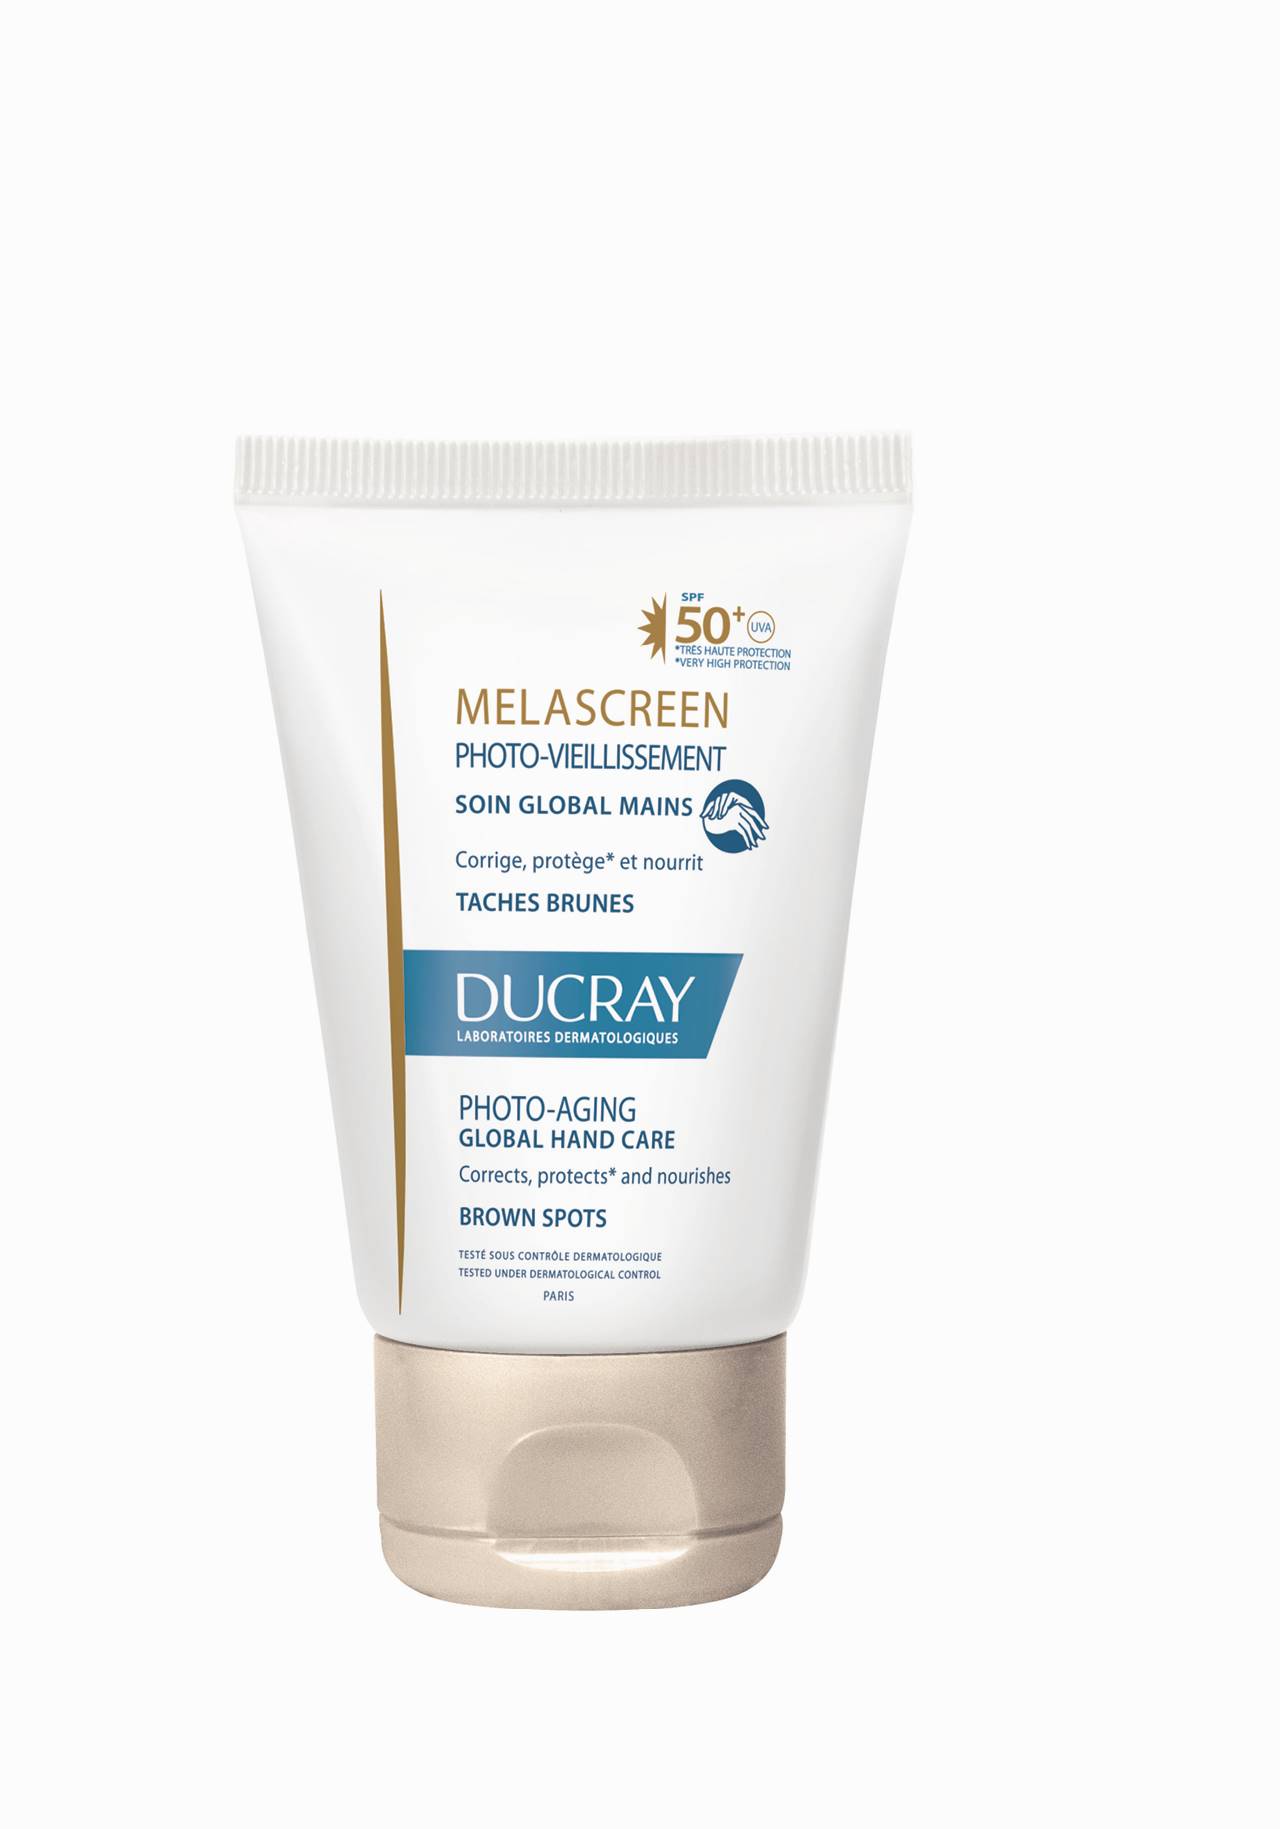 Crema de manos Melascreen de Ducray Protege y cuida tus manso durante la cuarentena